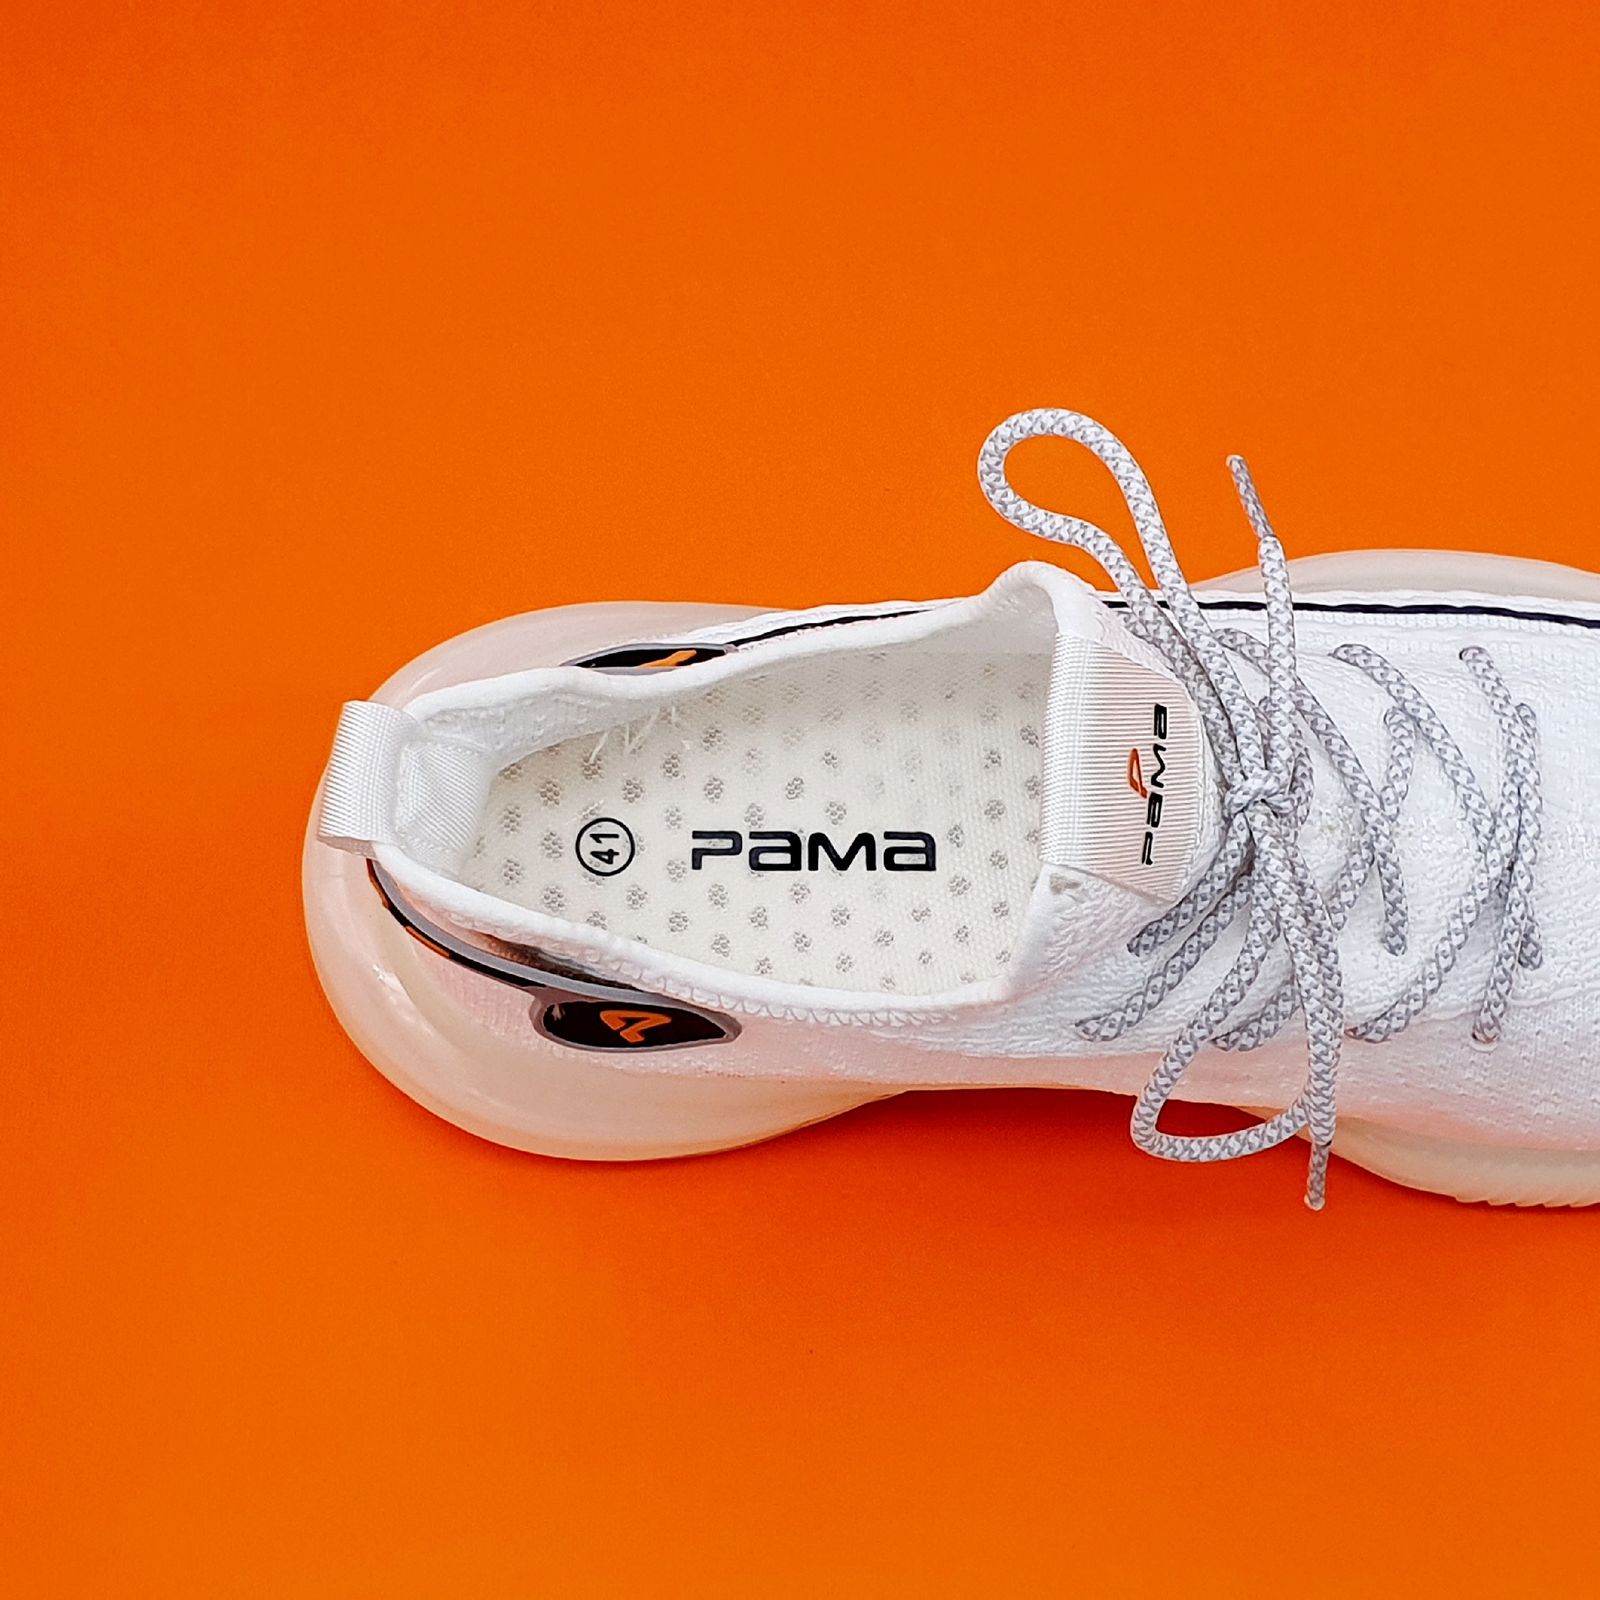 کفش پیاده روی مردانه پاما مدل VR-822 کد G1604 -  - 4